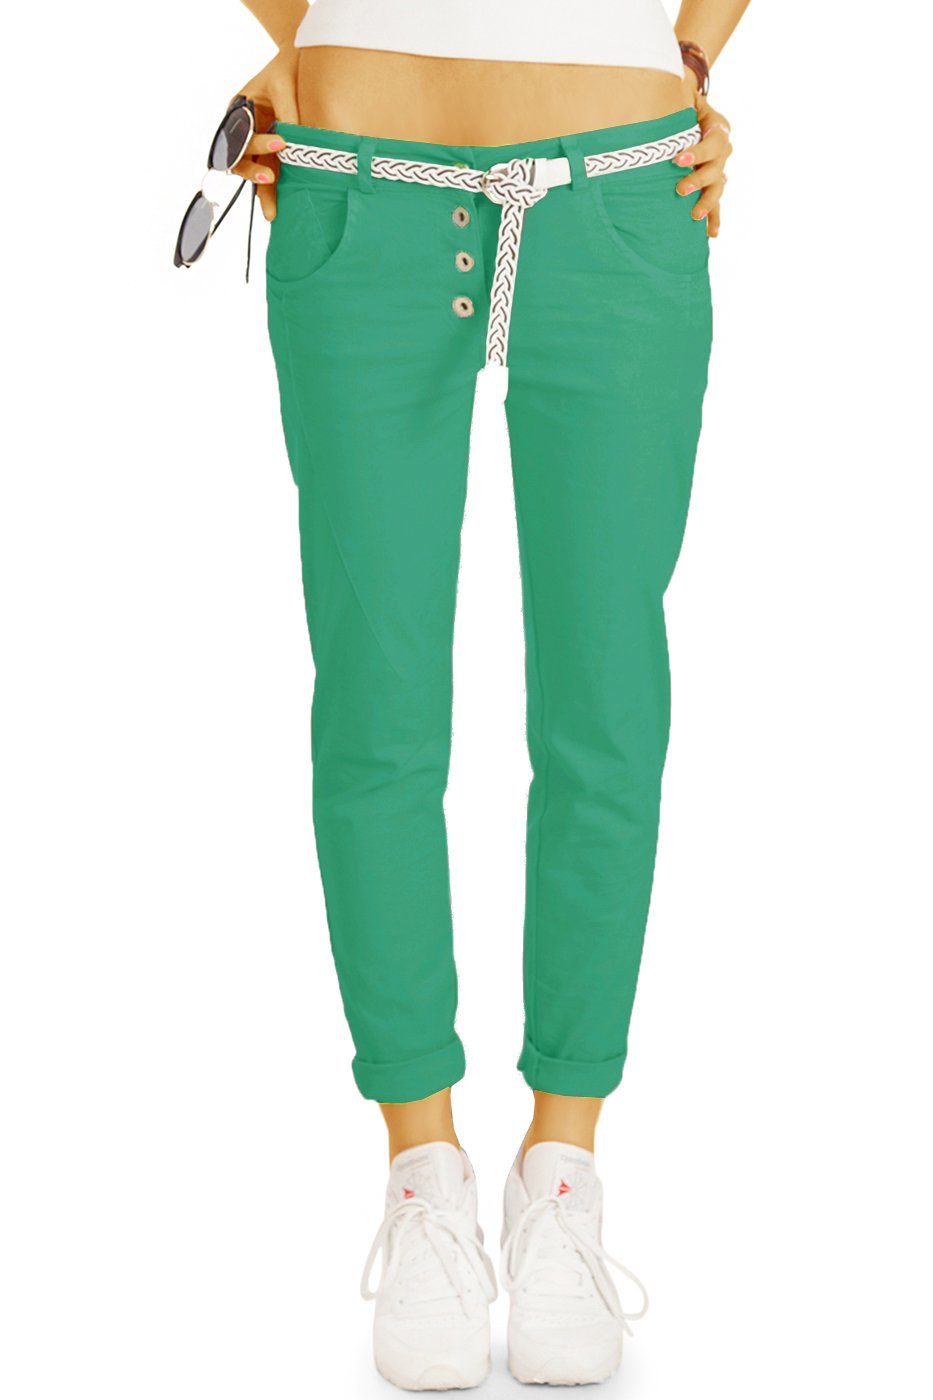 be styled Chinohose Stoffhosen mit Gürtel - legere hüftige Chinohosen - Damen - h18a in Unifarben grün